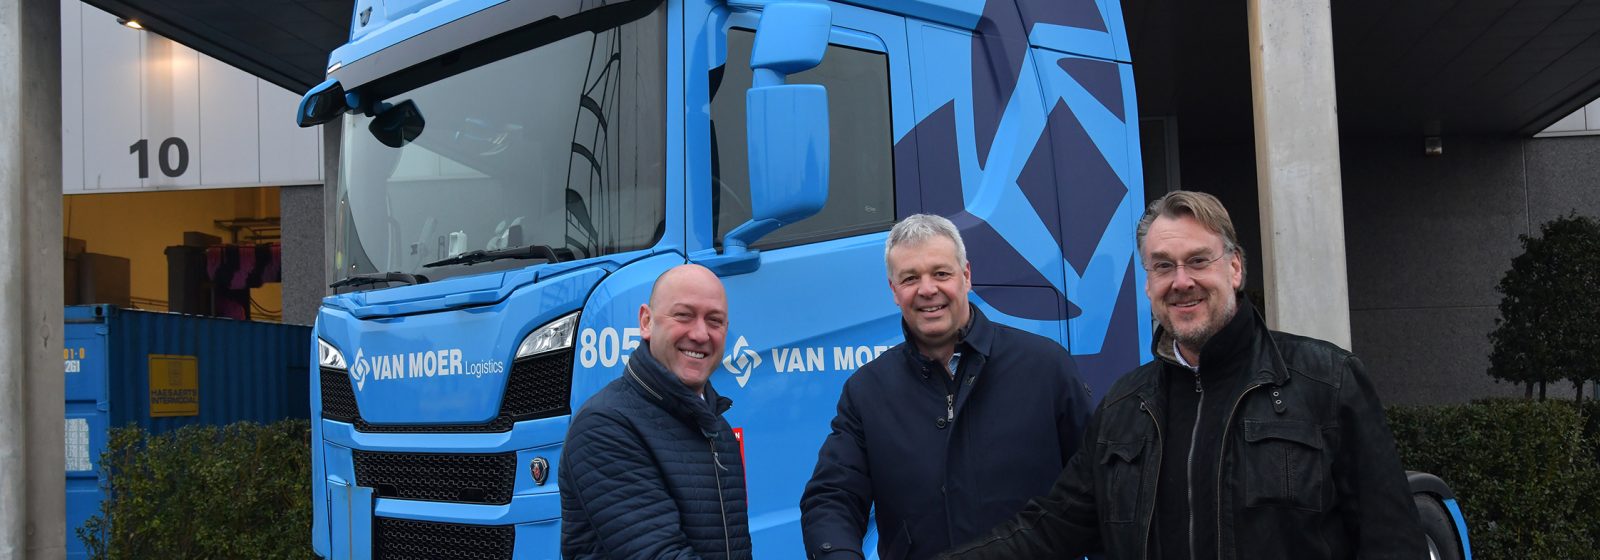 20220223 Van Moer Scania